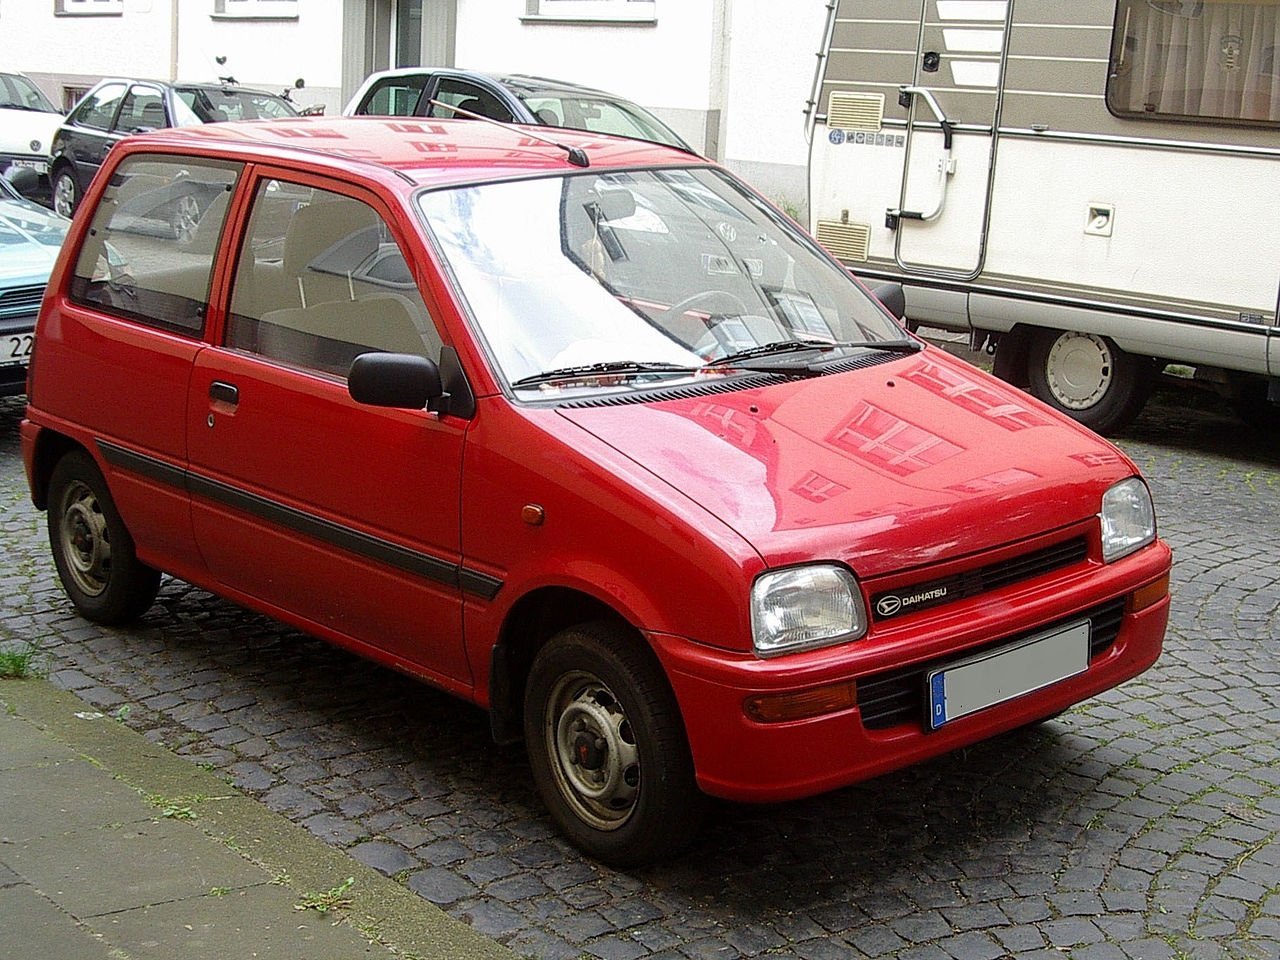 Daihatsu Cuore 1990 - 1994